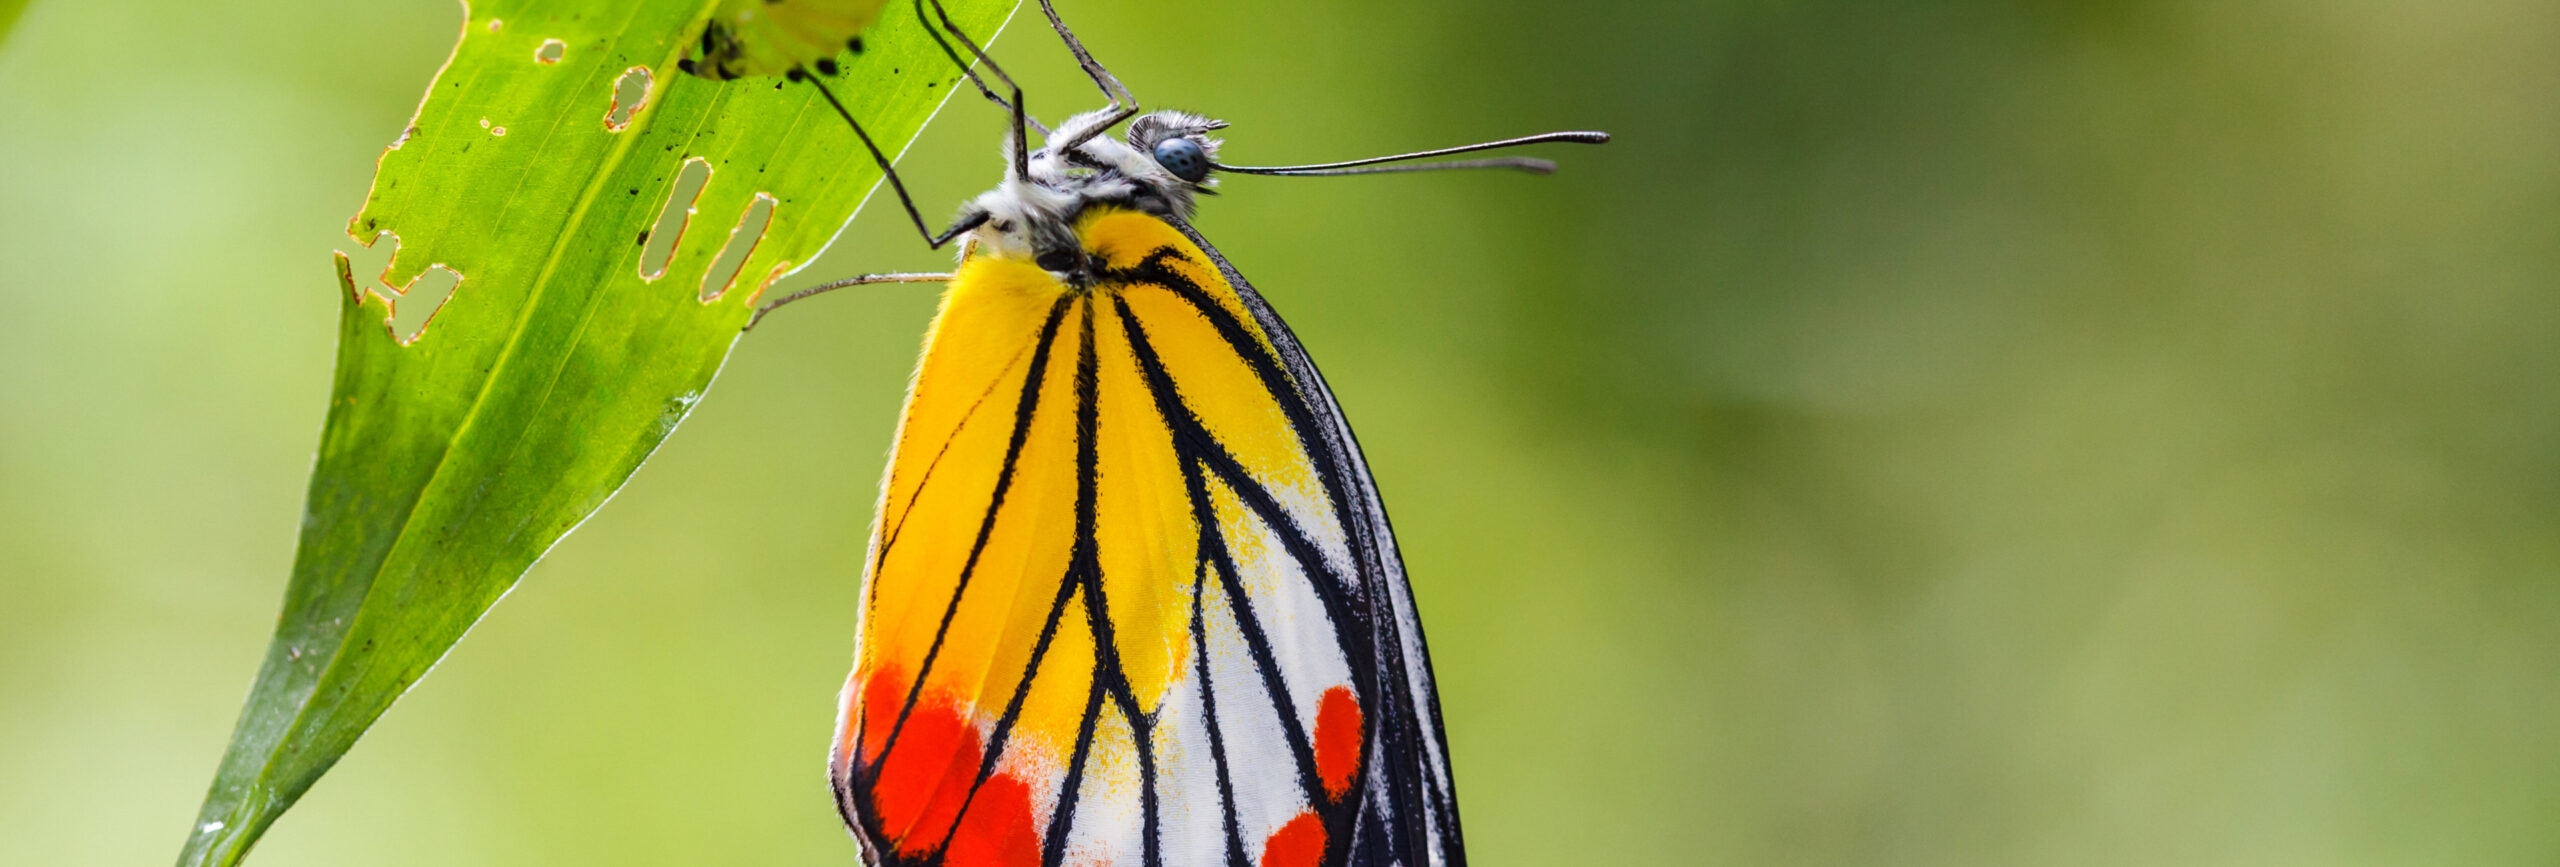 Schmetterling an einem grünen zerfressen Blatt vor unscharfem Hintergrund. - insysta